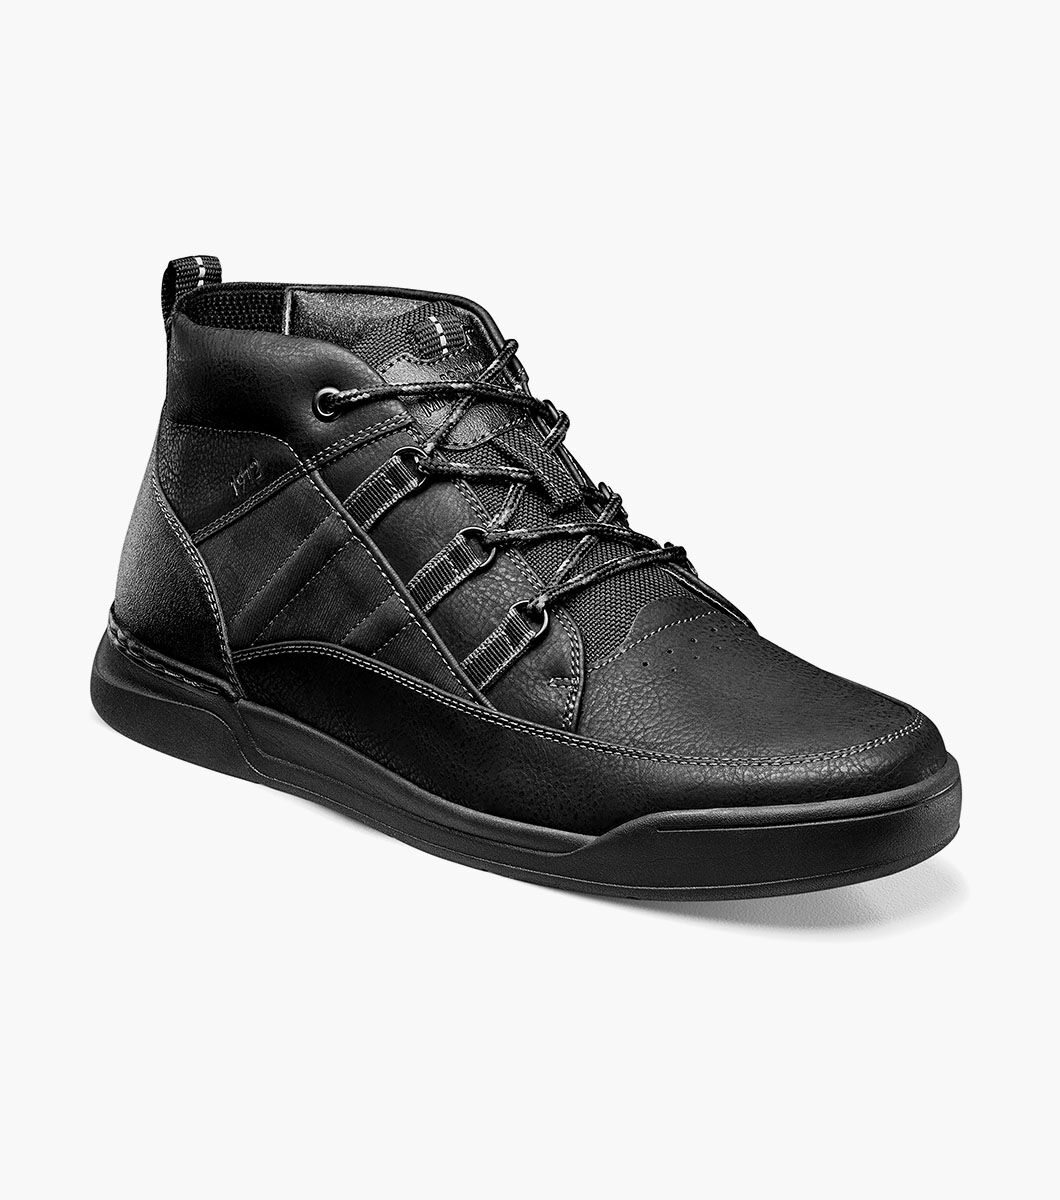 Nunn Bush Shoes Tour Work Moc Toe Sneaker Boot Black Size 10.5